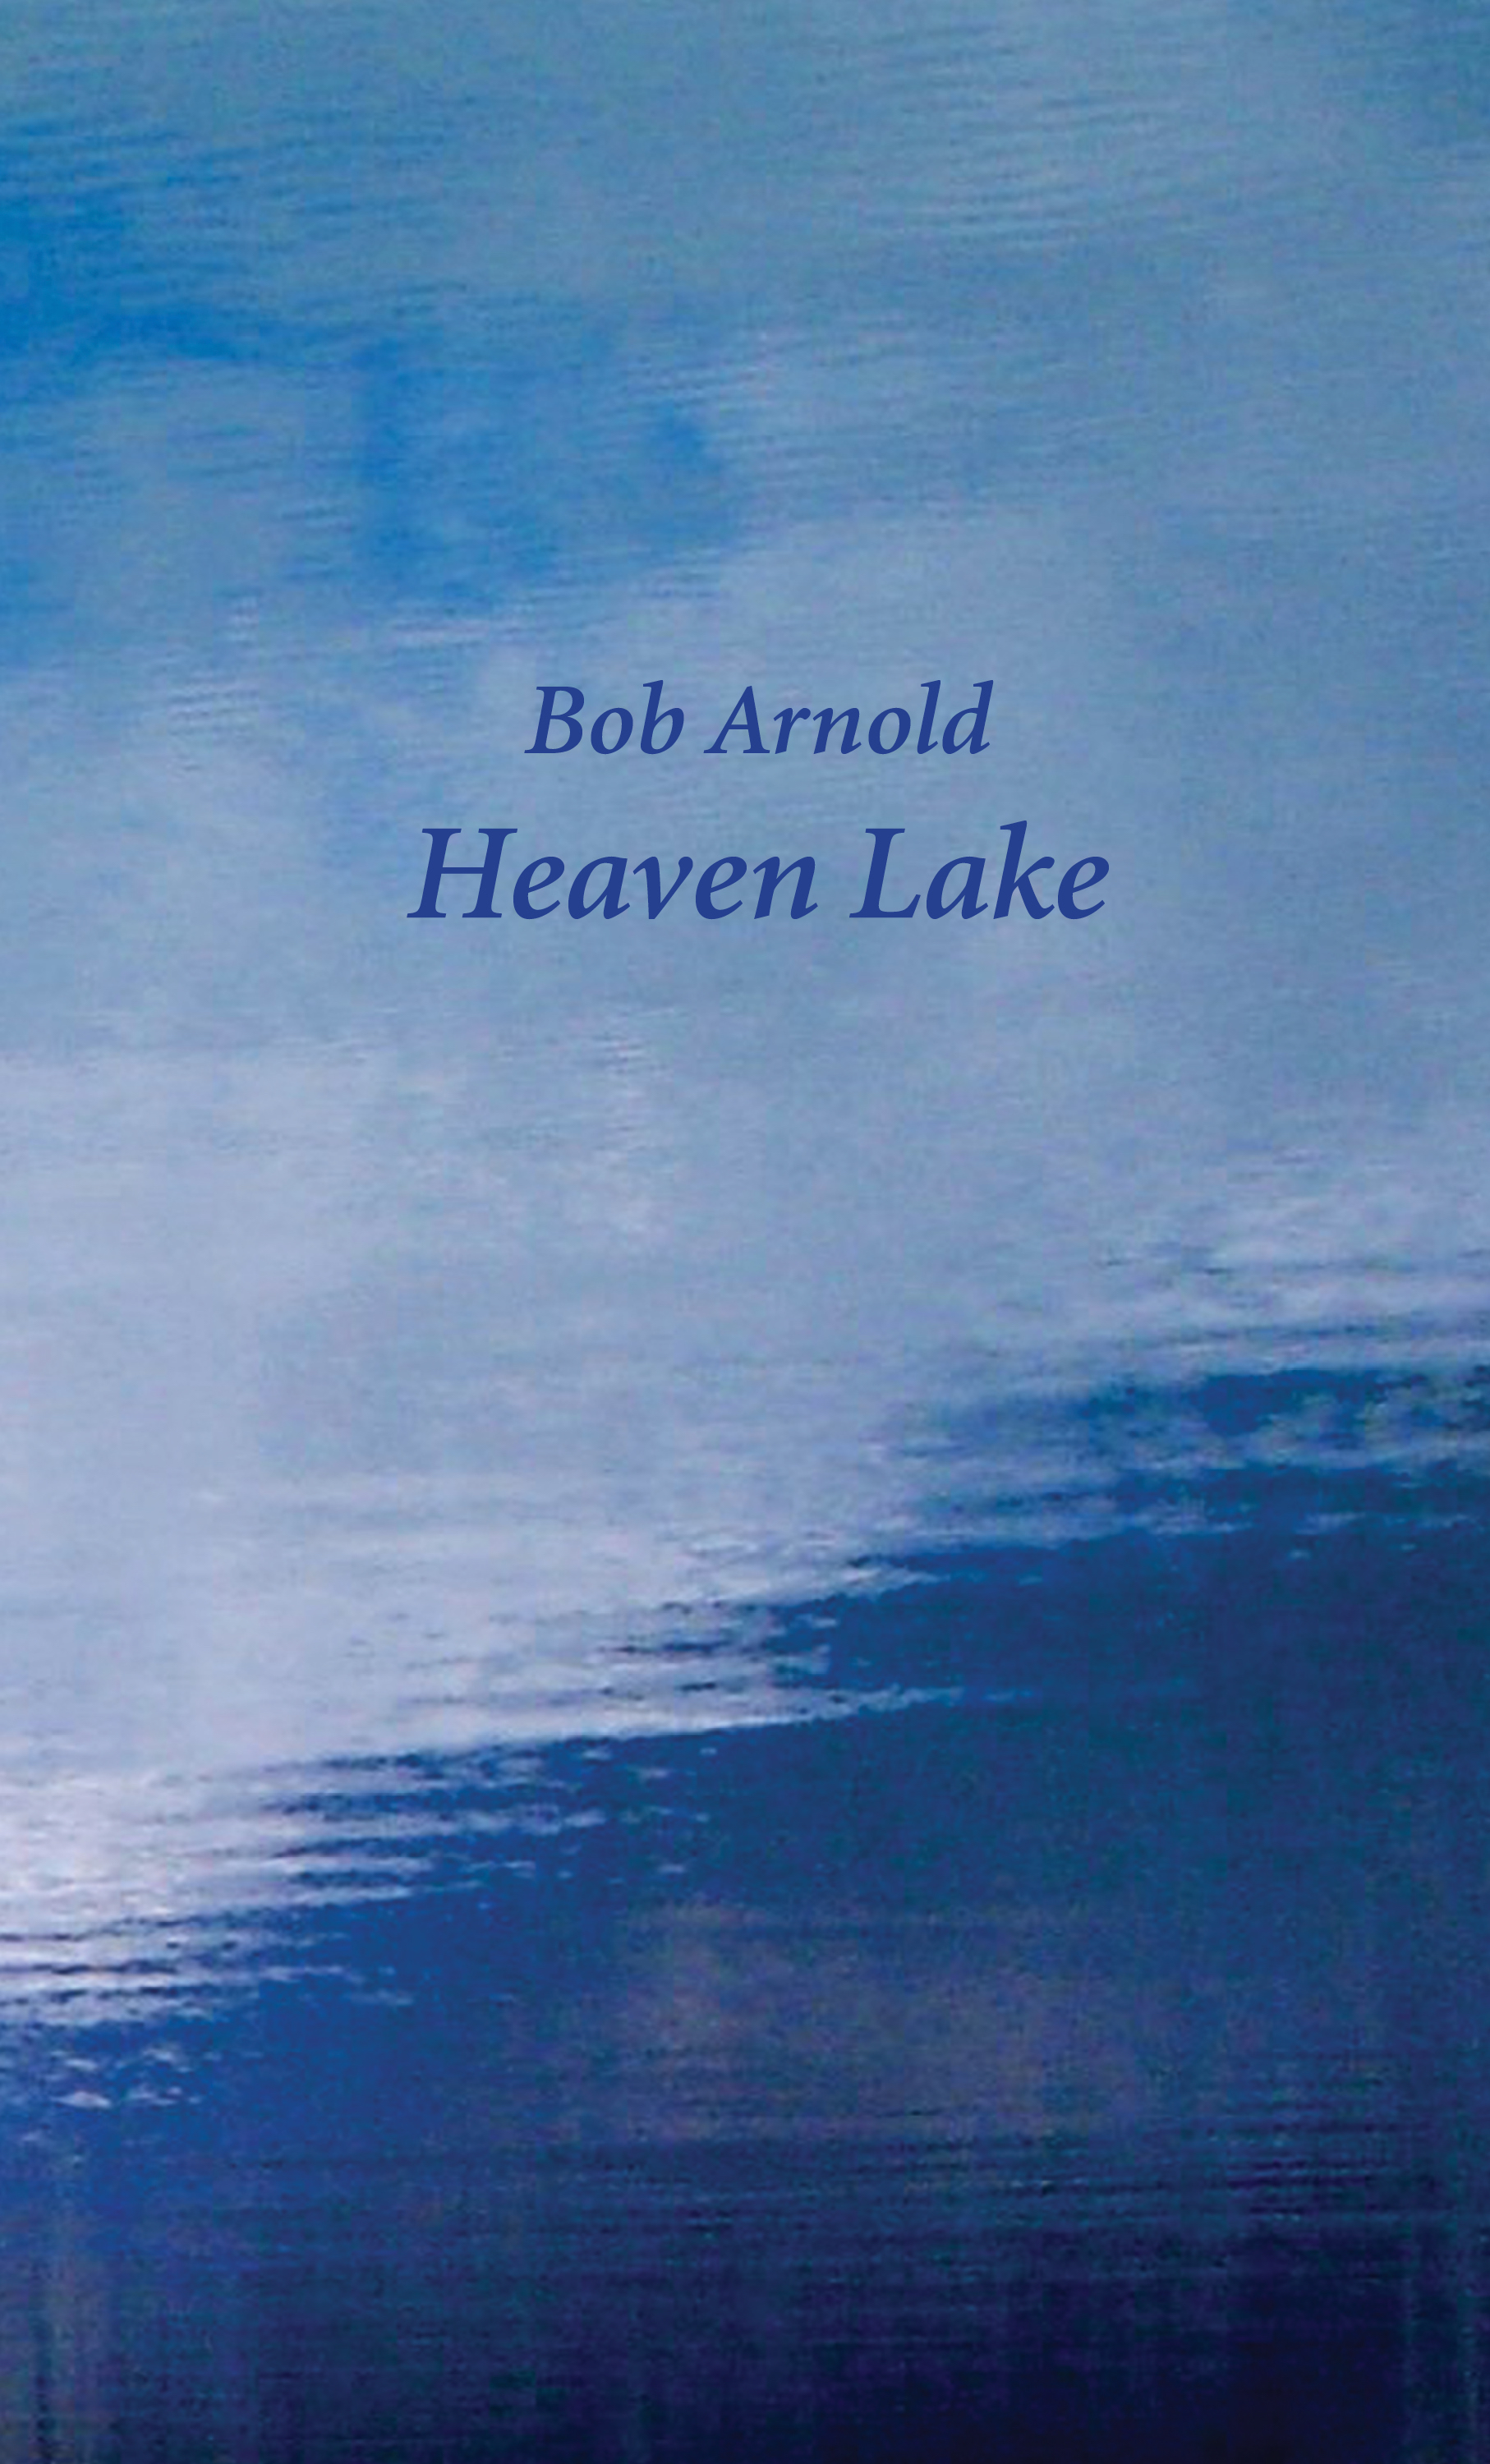 Heaven Lake by Bob Arnold